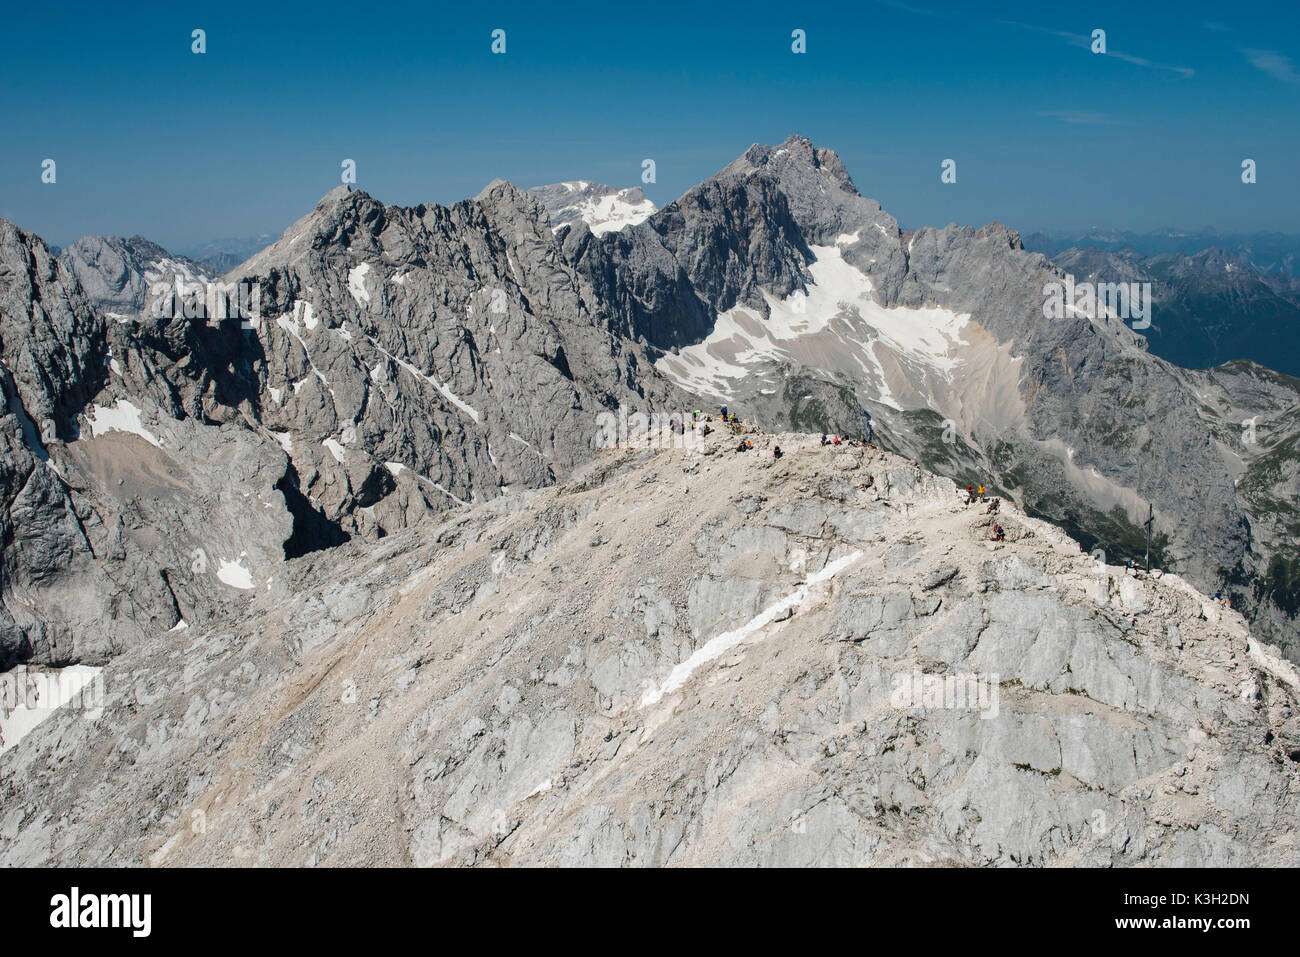 Alpspitze, Zugspitze, Jubiläumsgrat, Garmisch-Partenkirchen, Alpspitz summit, aerial picture, Germany, Bavaria, Upper Bavaria, Bavarian alps, Werdenfelser Land, Zugspitze region Stock Photo